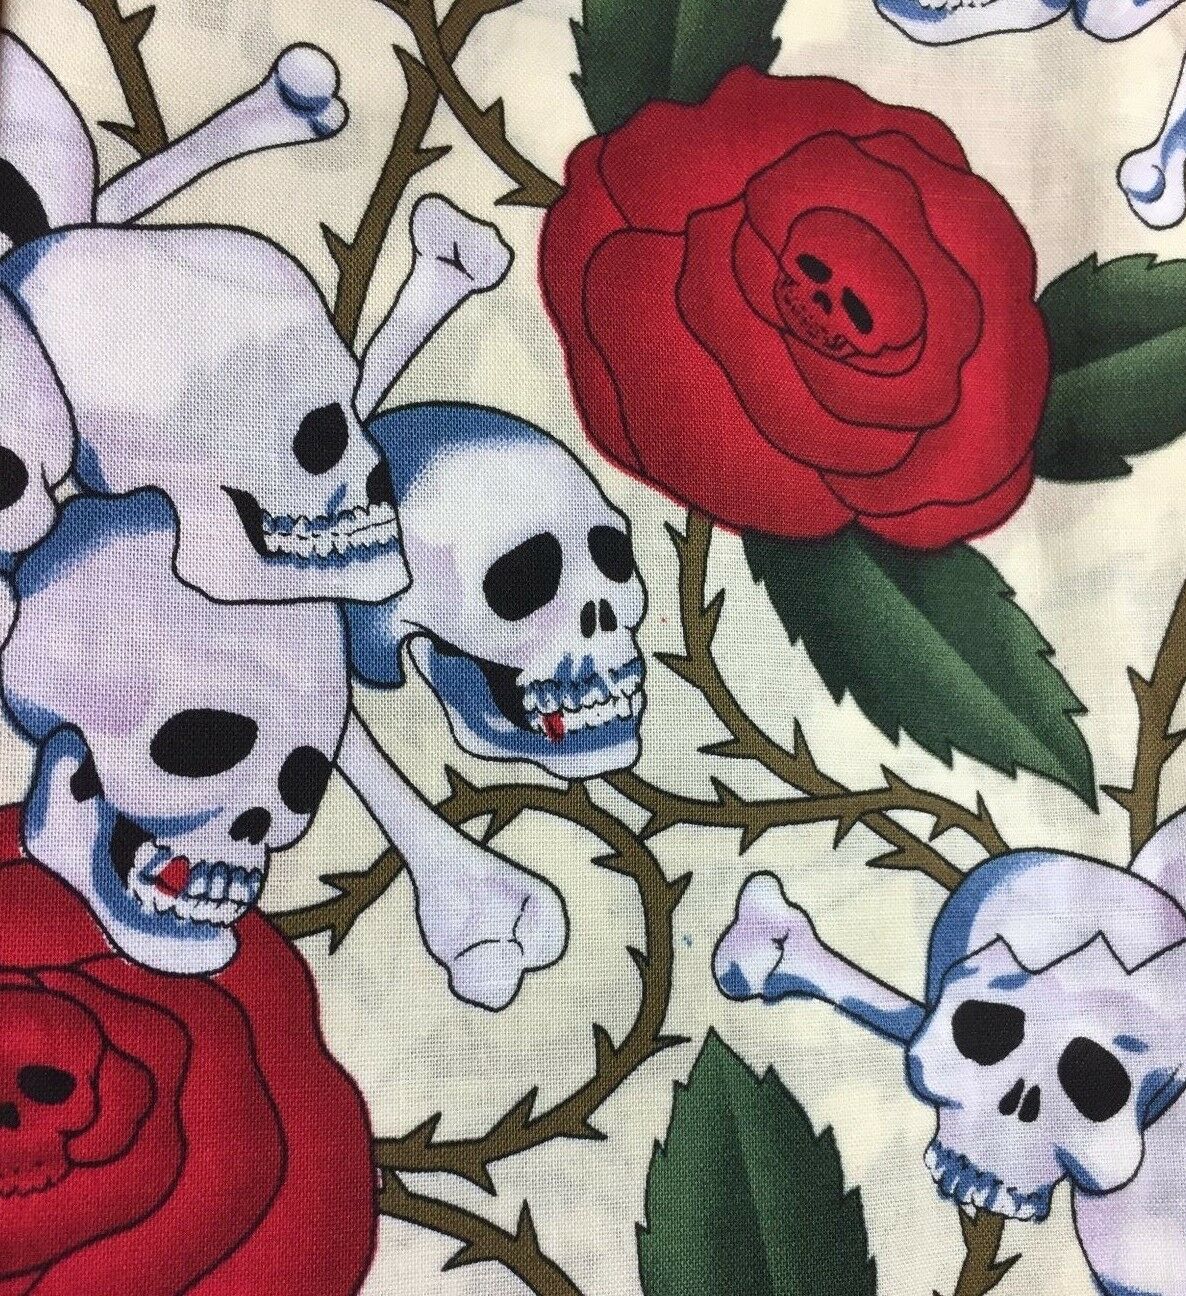 Skull & Cross bones & red roses Square Bandana